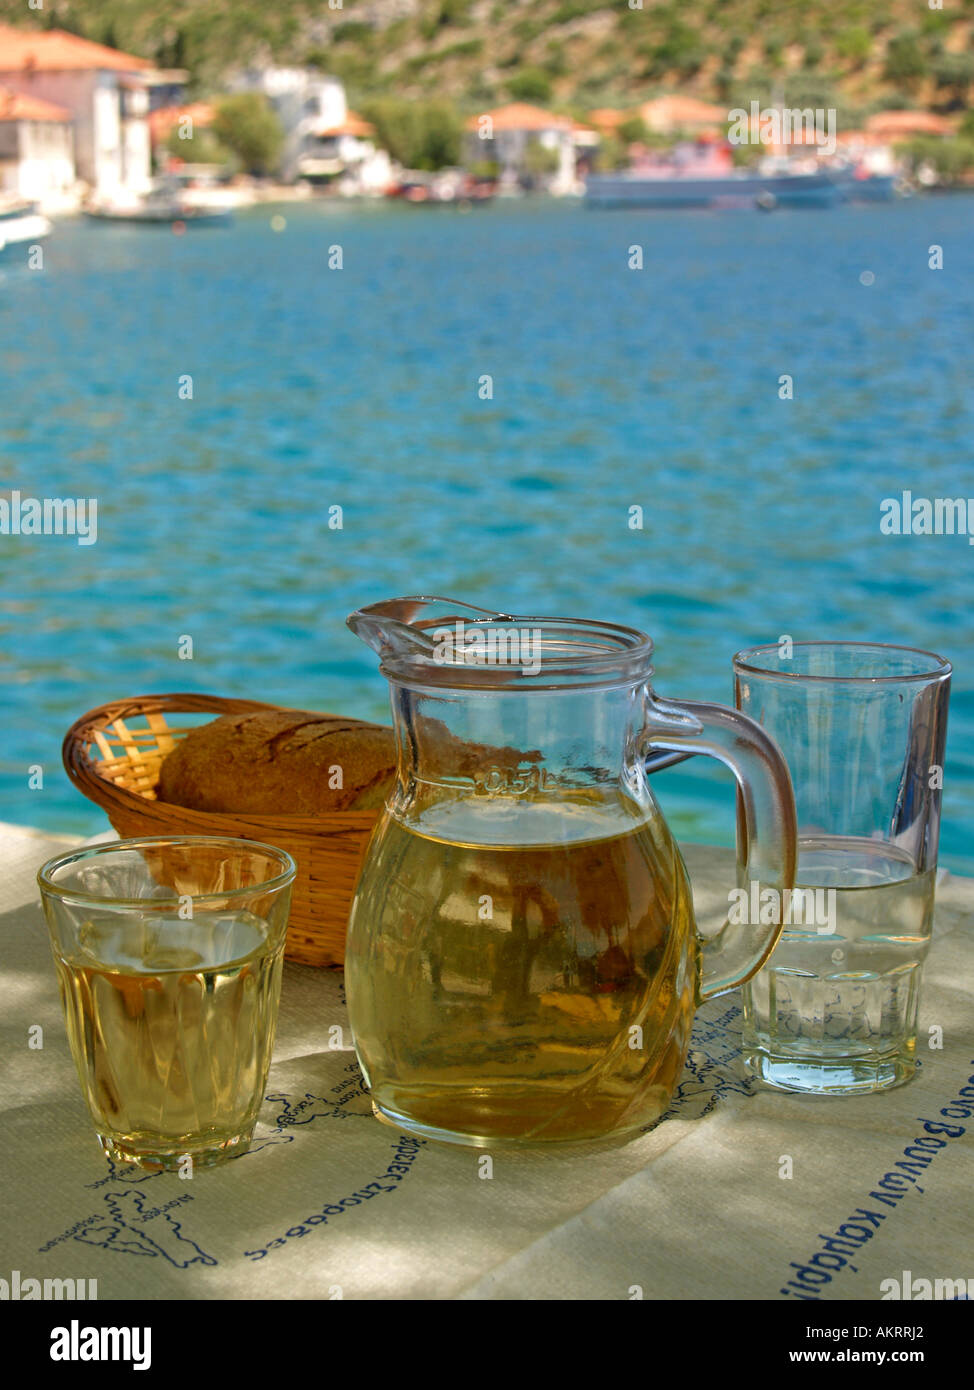 Una jarra llena de vino blanco Retsina dos vasos cesta con pan sobre una tabla en el fondo color turquesa del Mar Mediterráneo Foto de stock